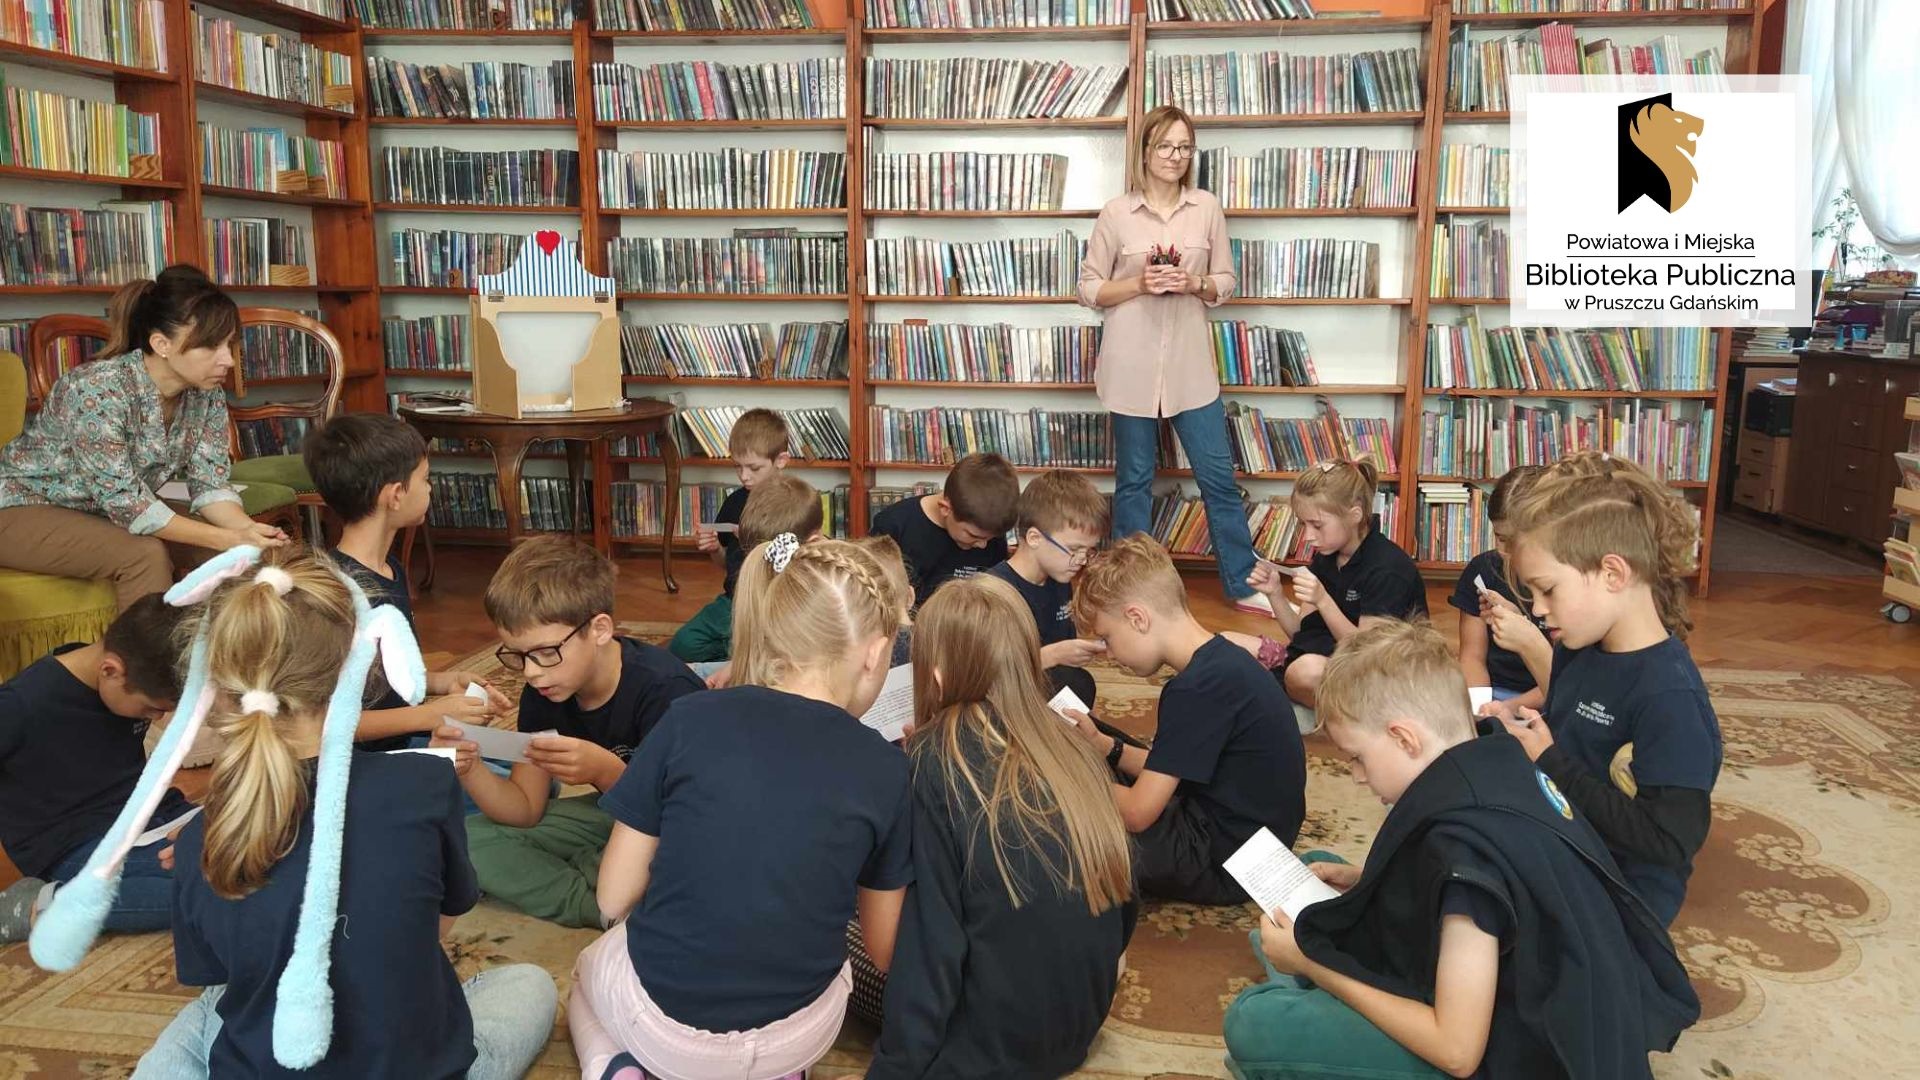 Dzieci siedzą na podłodze. Czytają teksty z kartek. Po lewej siedzi nauczycielka. Za uczniami stoi bibliotekarka i trzyma w ręce pisaki. W tle regały z książkami.